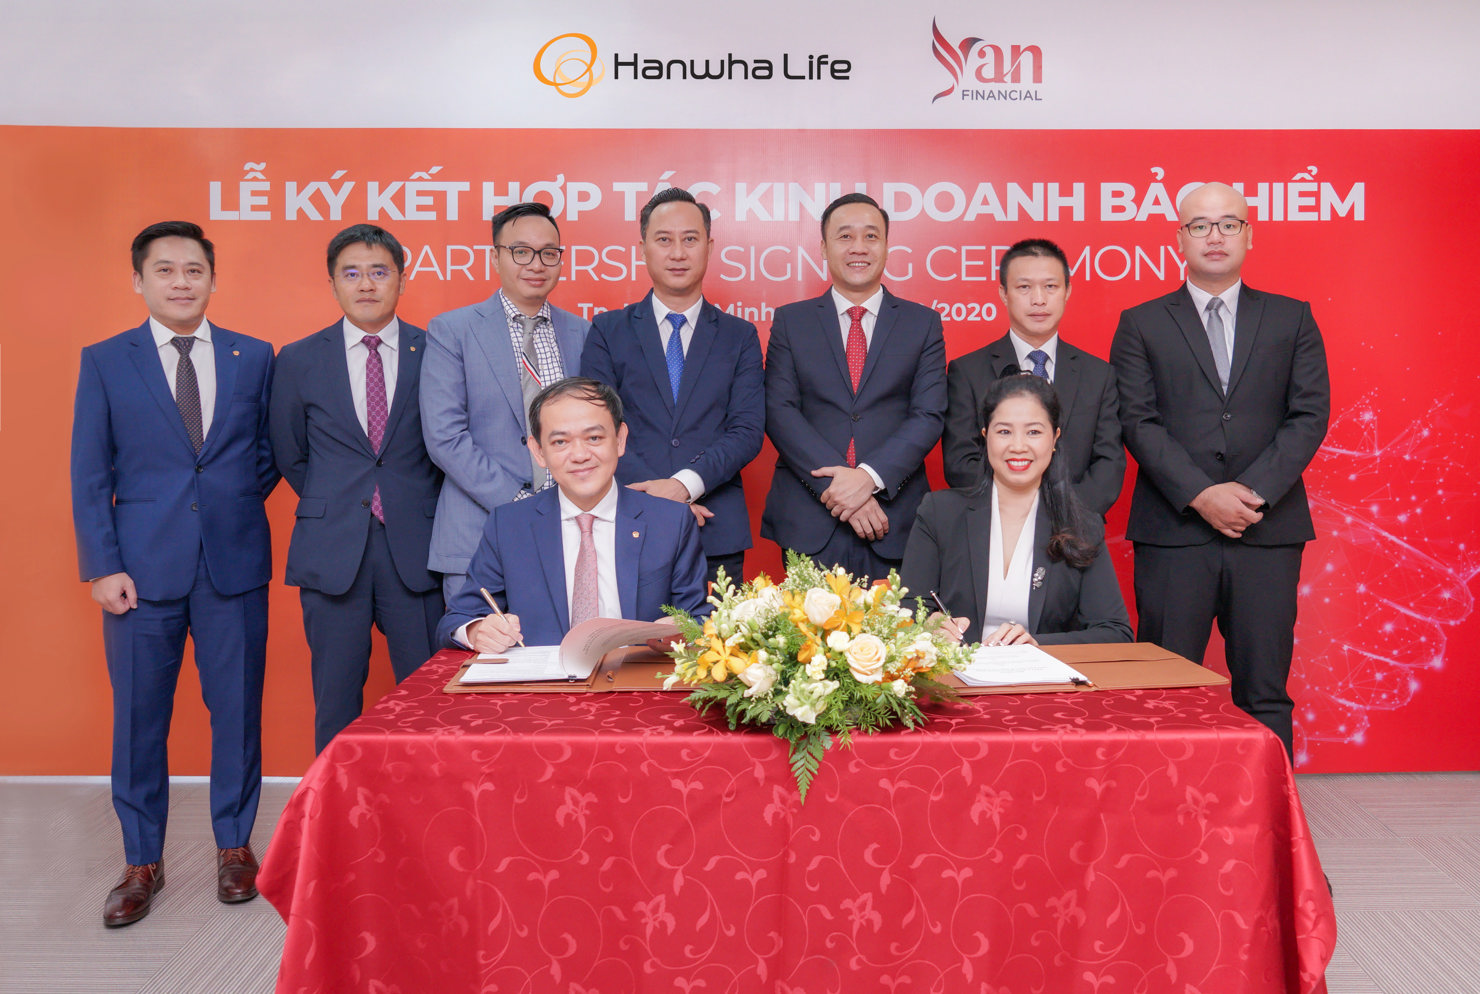 Ông Đào Duy Ninh (bên trái) - Phó Tổng Giám đốc Chiến lược kinh doanh của Hanwha Life Việt Nam cùng bà Nguyễn Thị Yến (bên phải) - Chủ tịch Công ty Yan Financial Việt Nam thực hiện nghi thức ký kết hợp tác chiến lược giữa hai bên.